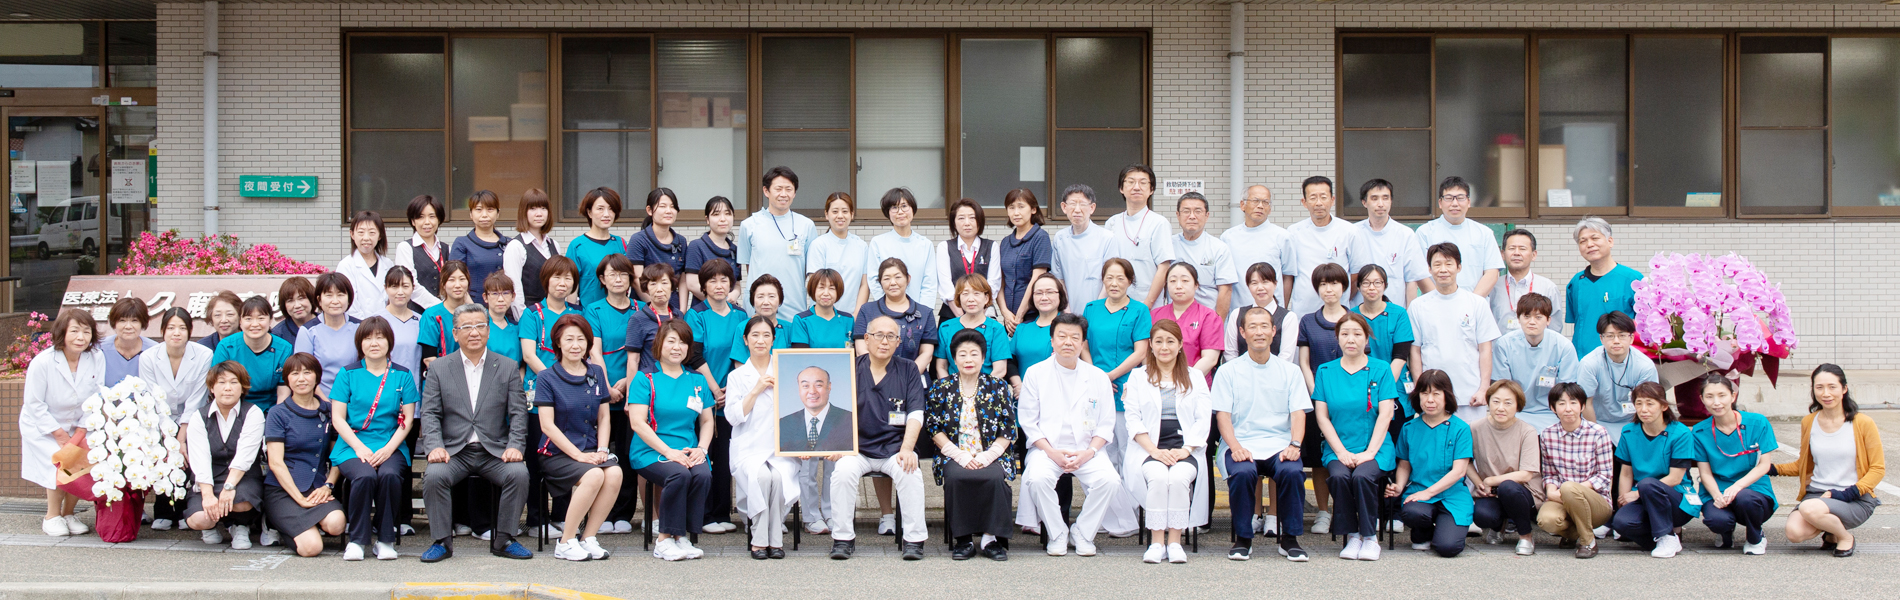 久藤総合病院設立50周年